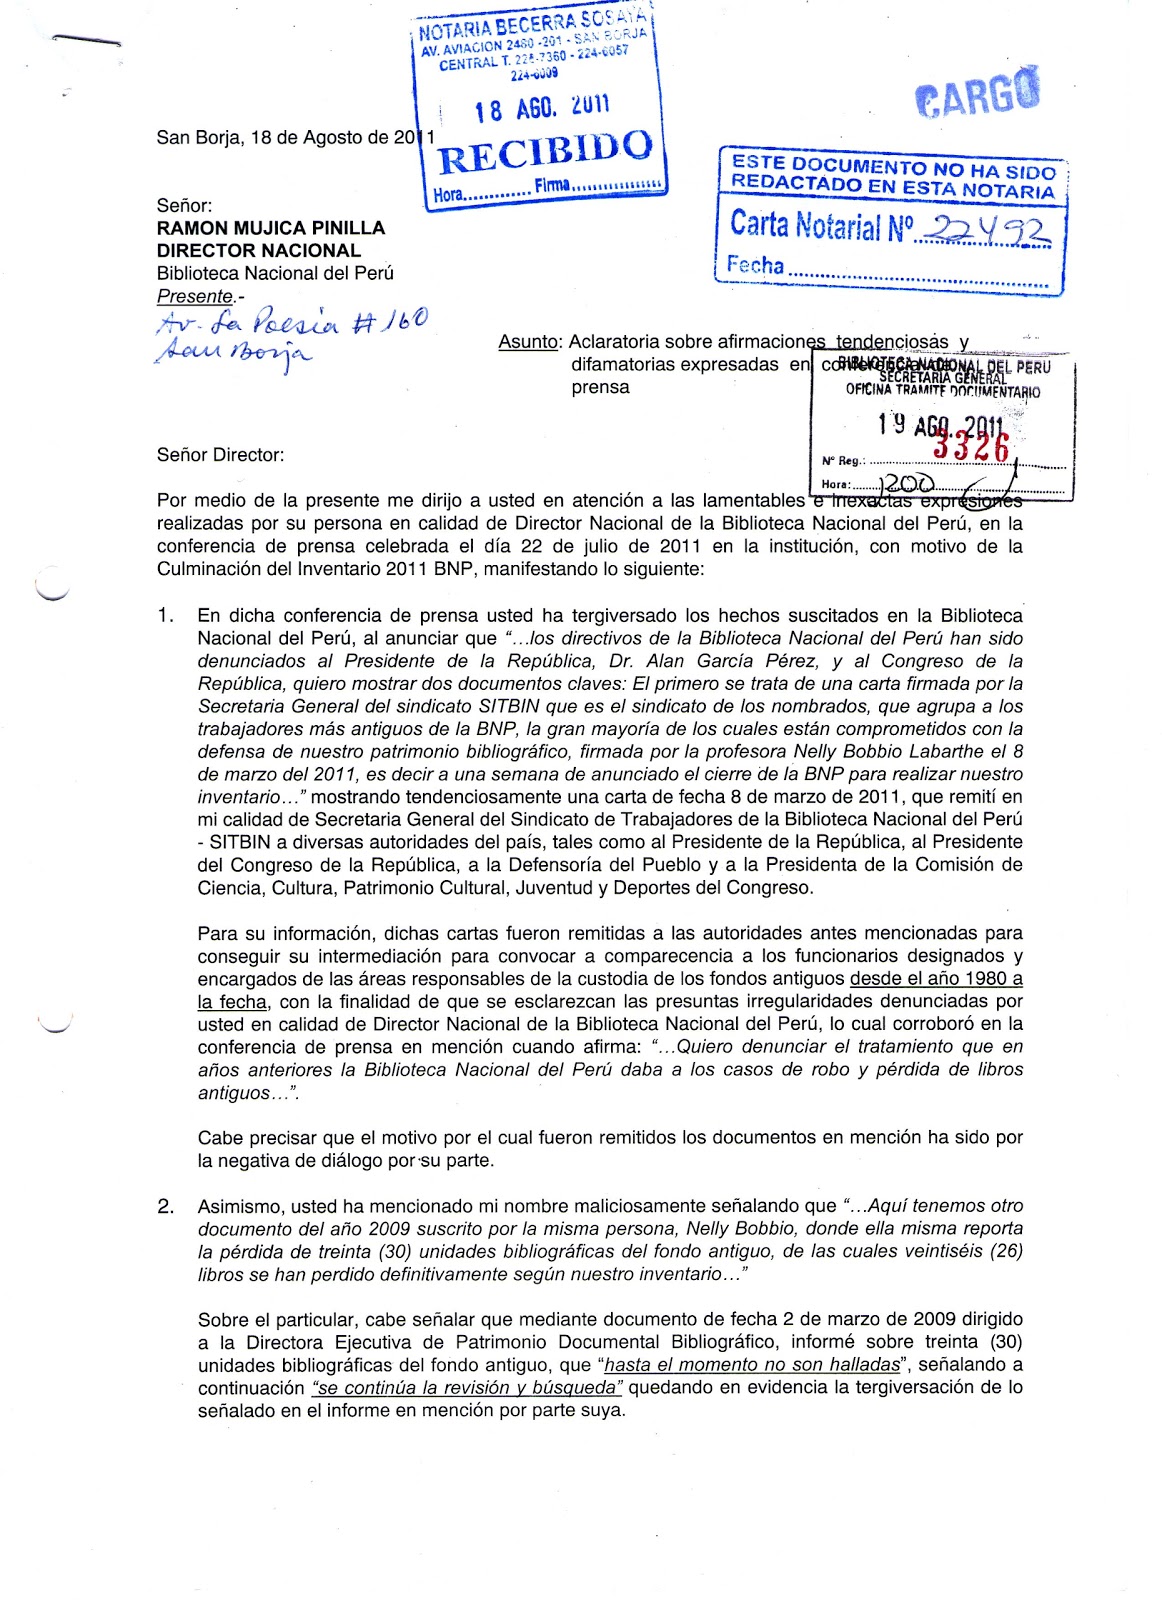 Sitbin Carta Notarial Enviada Al Director De La Biblioteca Nacional